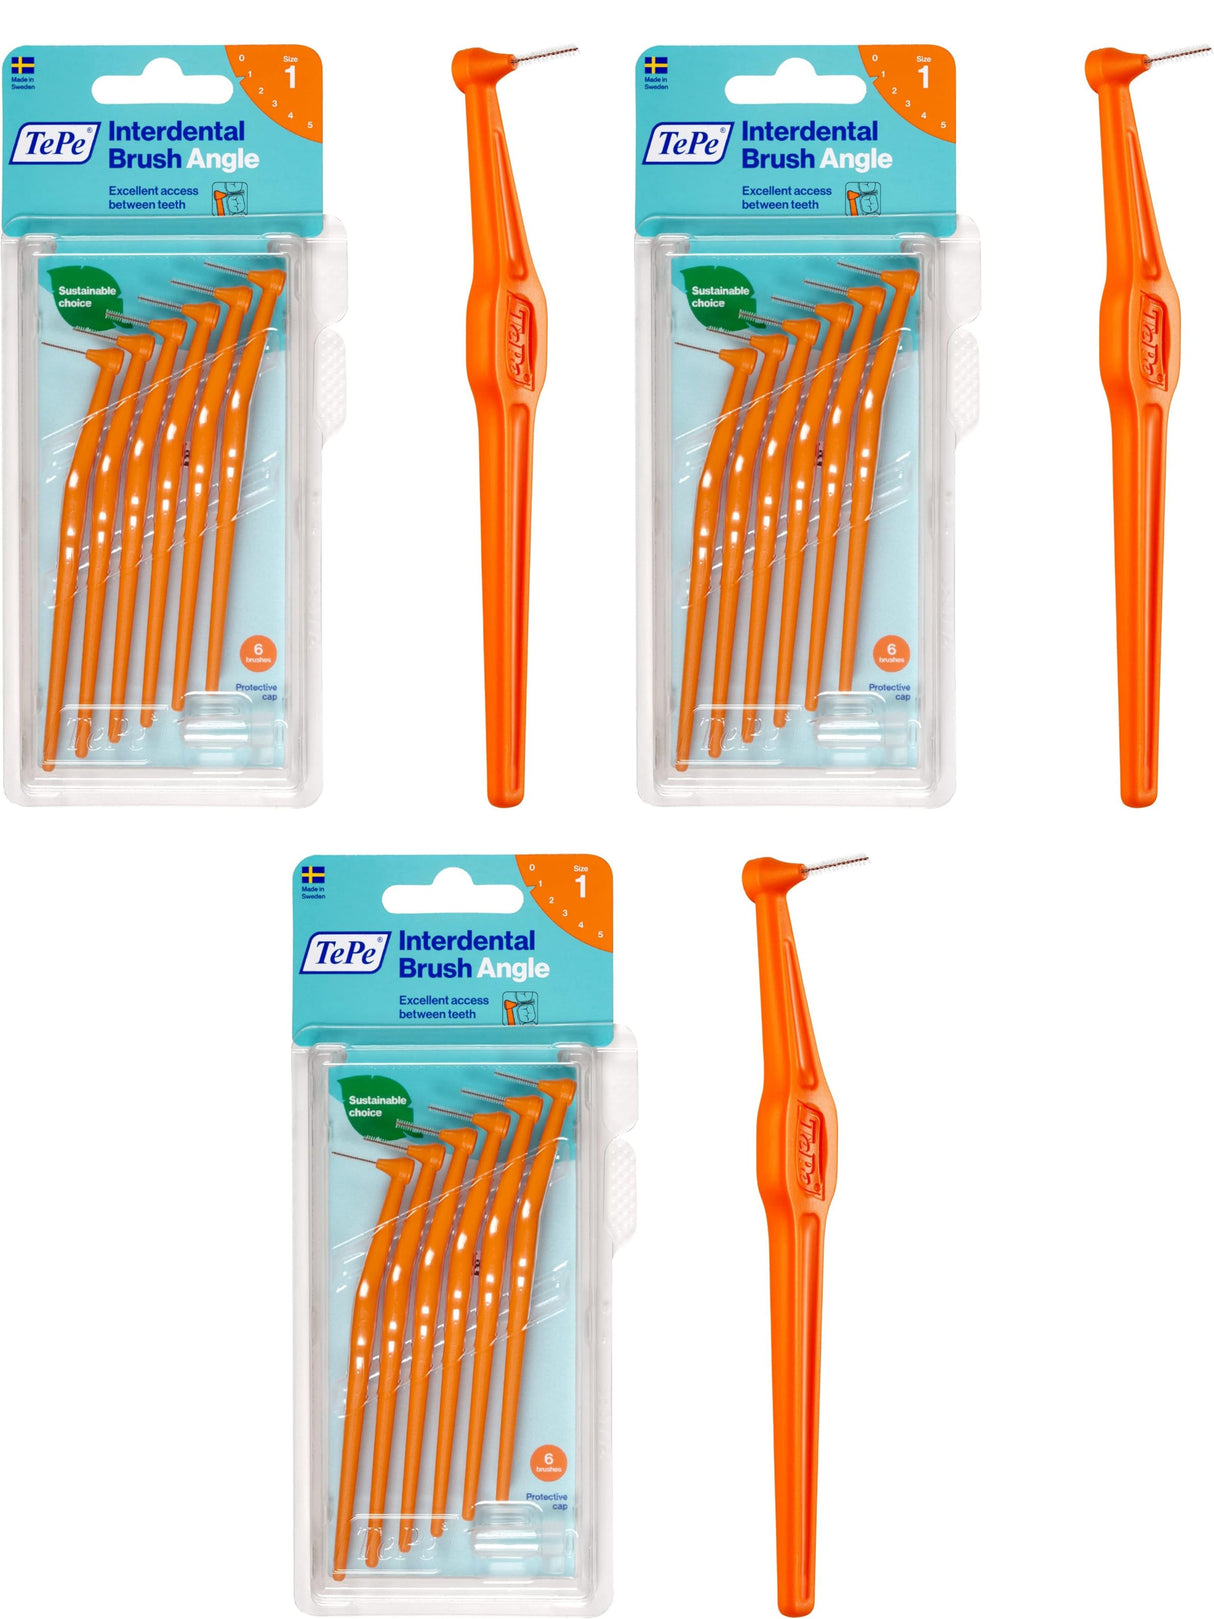 TePe Angle Interdental Brushes Orange 0.45mm (Size 1) 6 Pack - 3 Pack Bundle (18 Brushes)